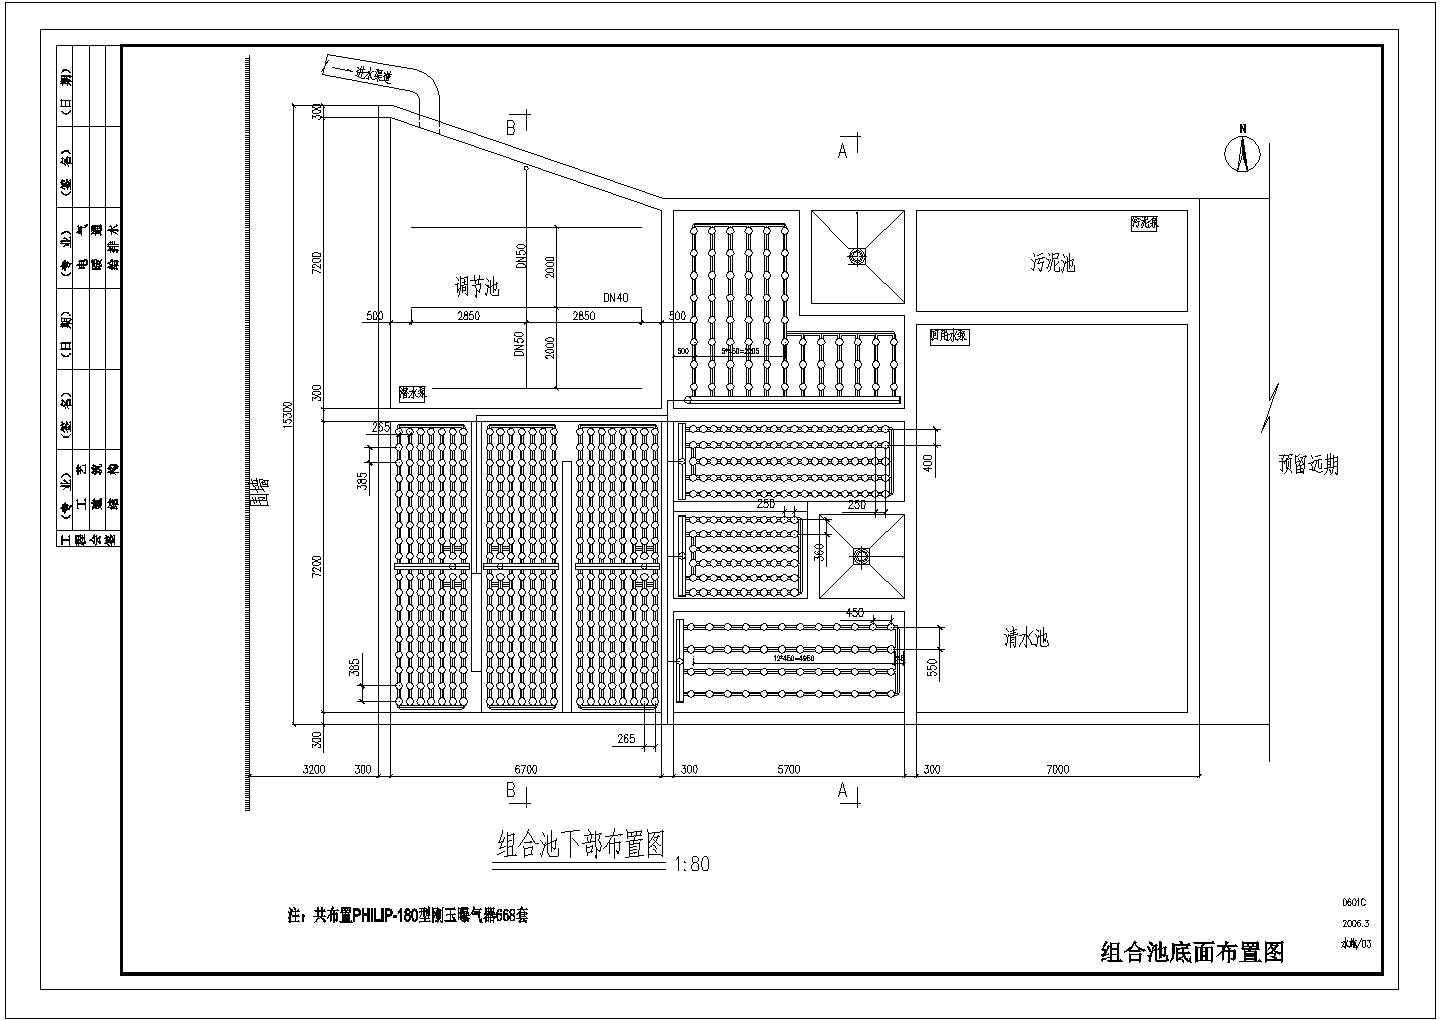 上海某公司污水改造项目工艺图曝气器CAD设计详细完整施工图